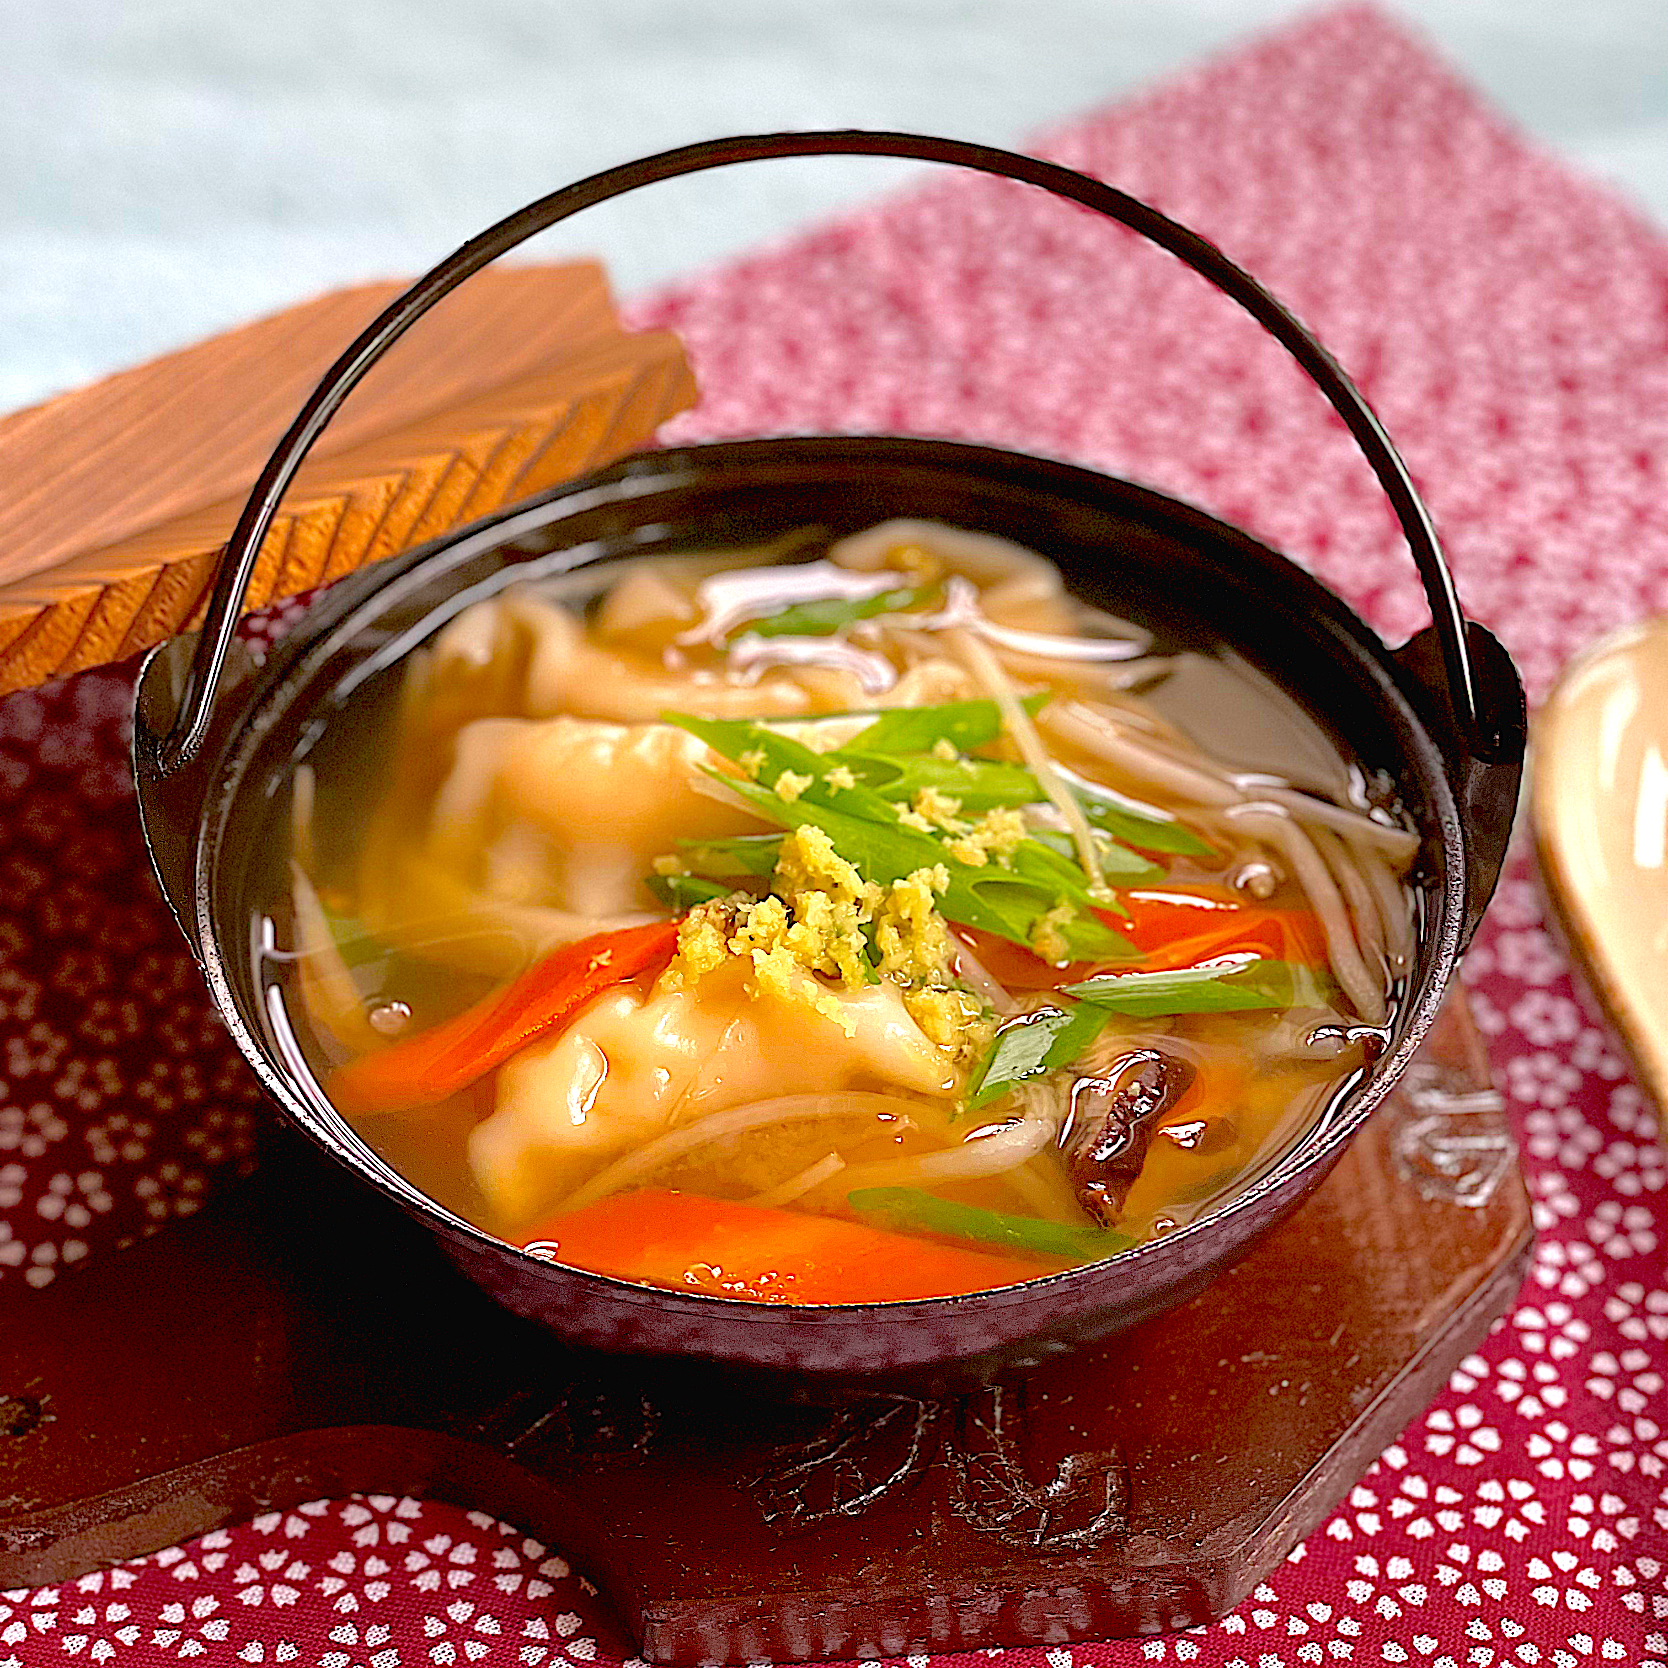 チルド海鮮スープ餃子を使って防災料理